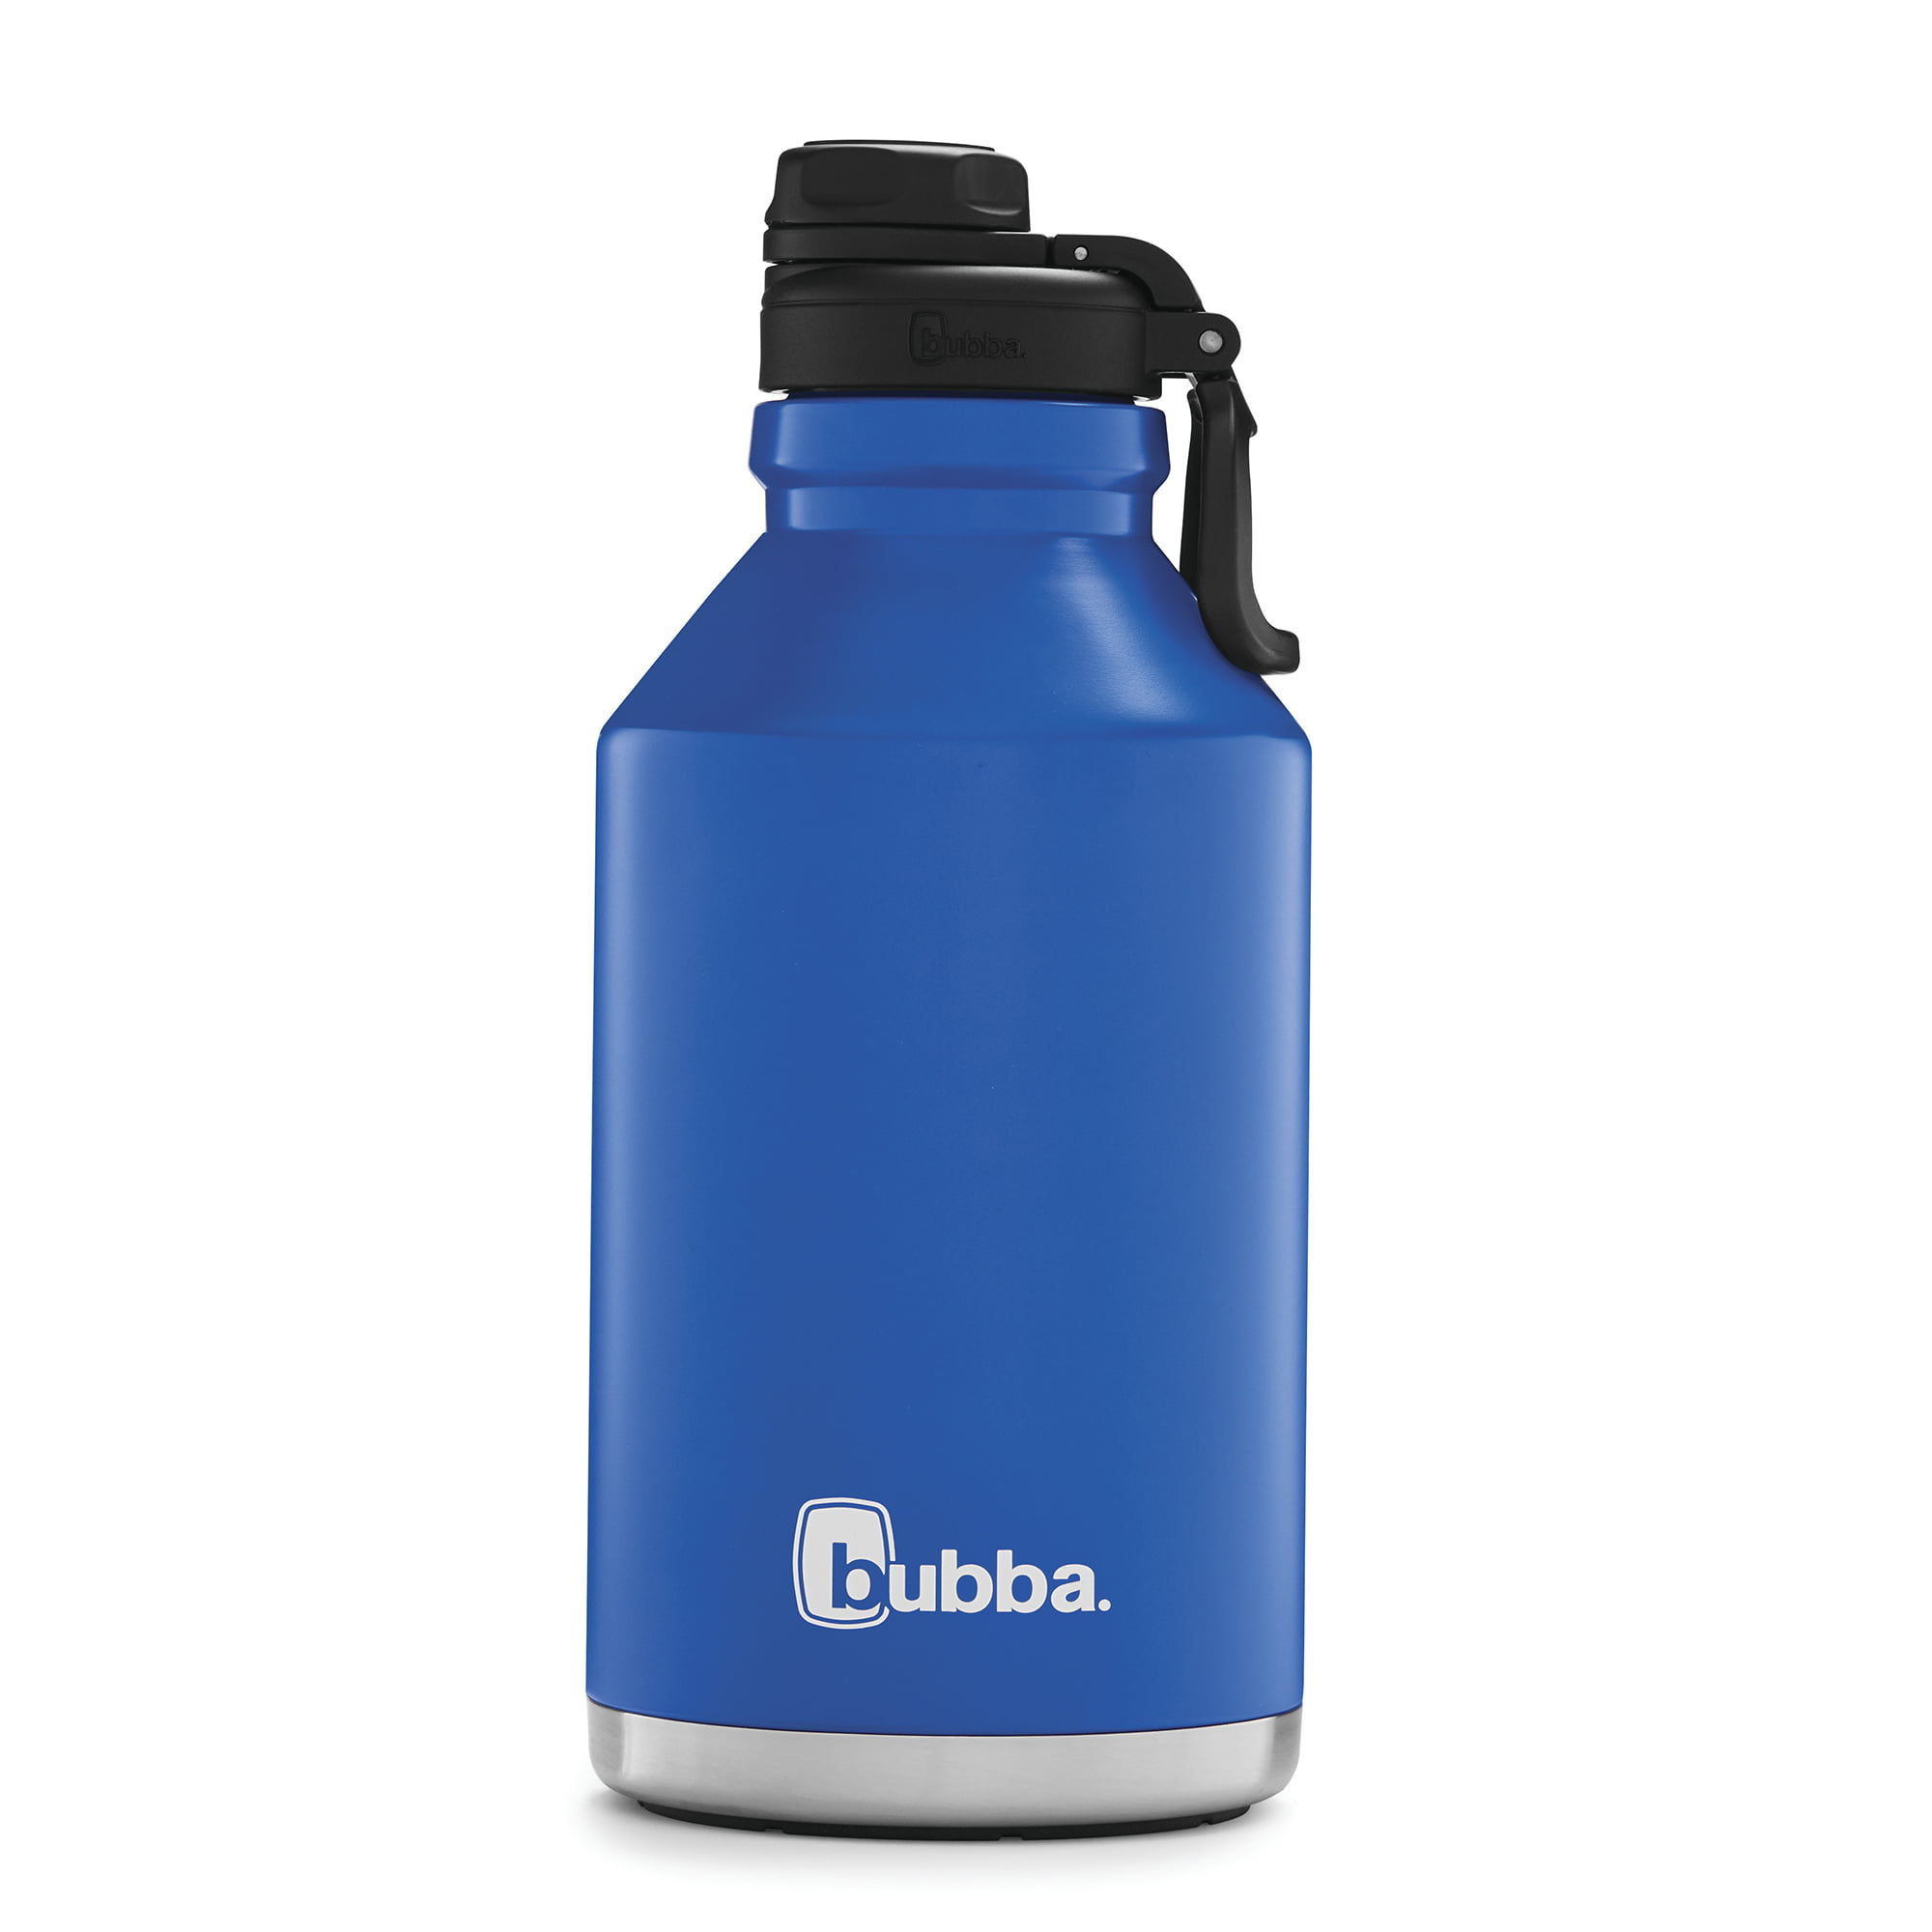 bubba water bottle canada